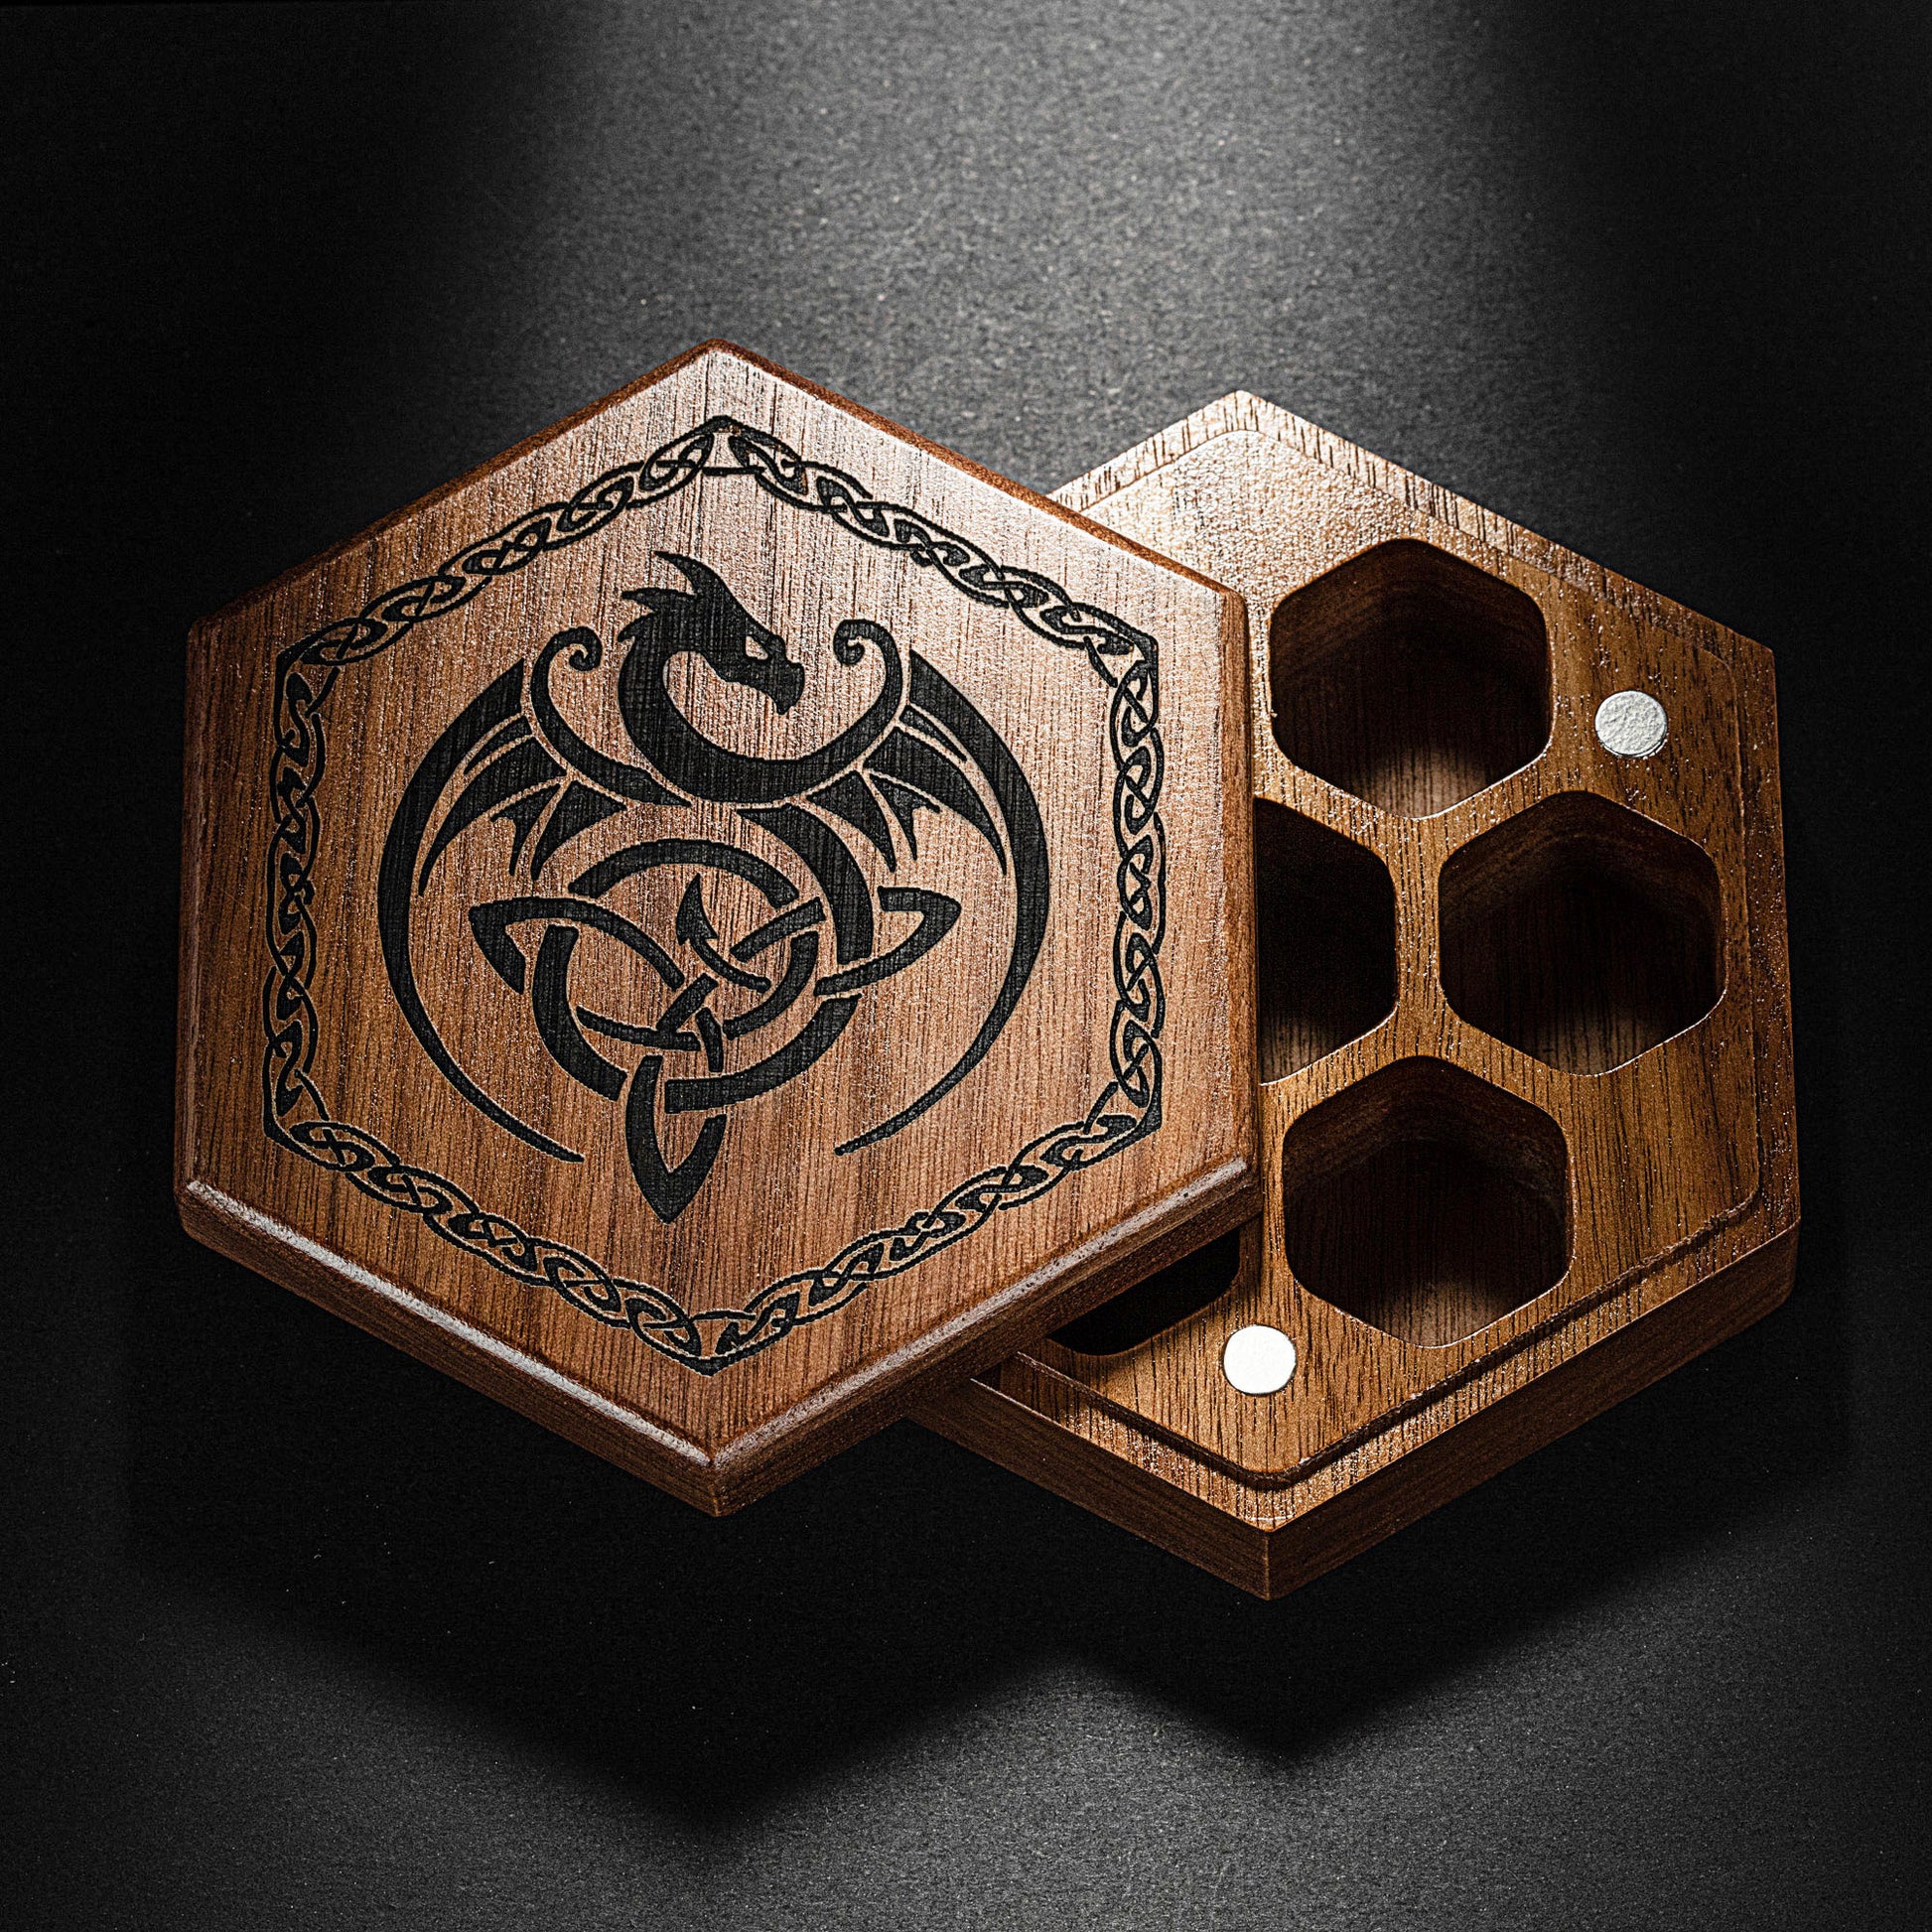 Black Walnut Wood Viking Dragon Motif DnD D&D Dice Box - CrystalMaggie